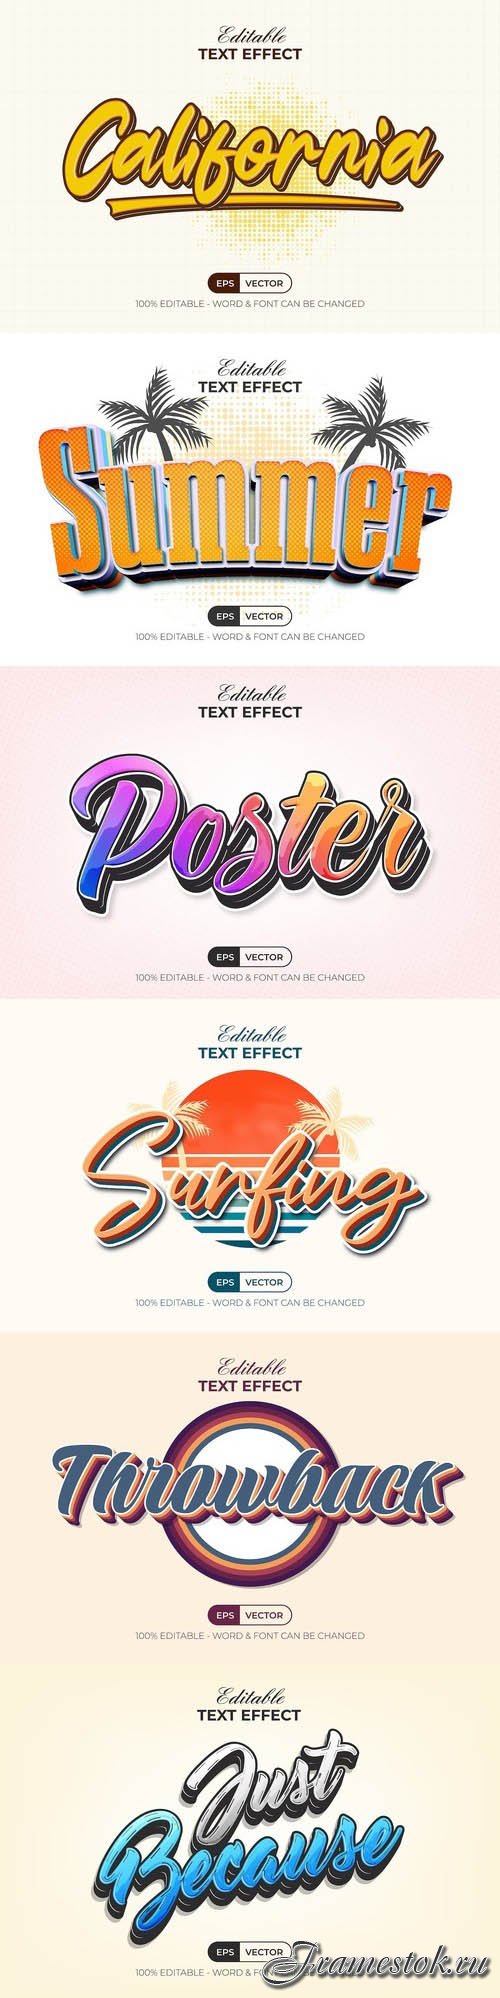 Vector 3d text editable, text effect font vol 200